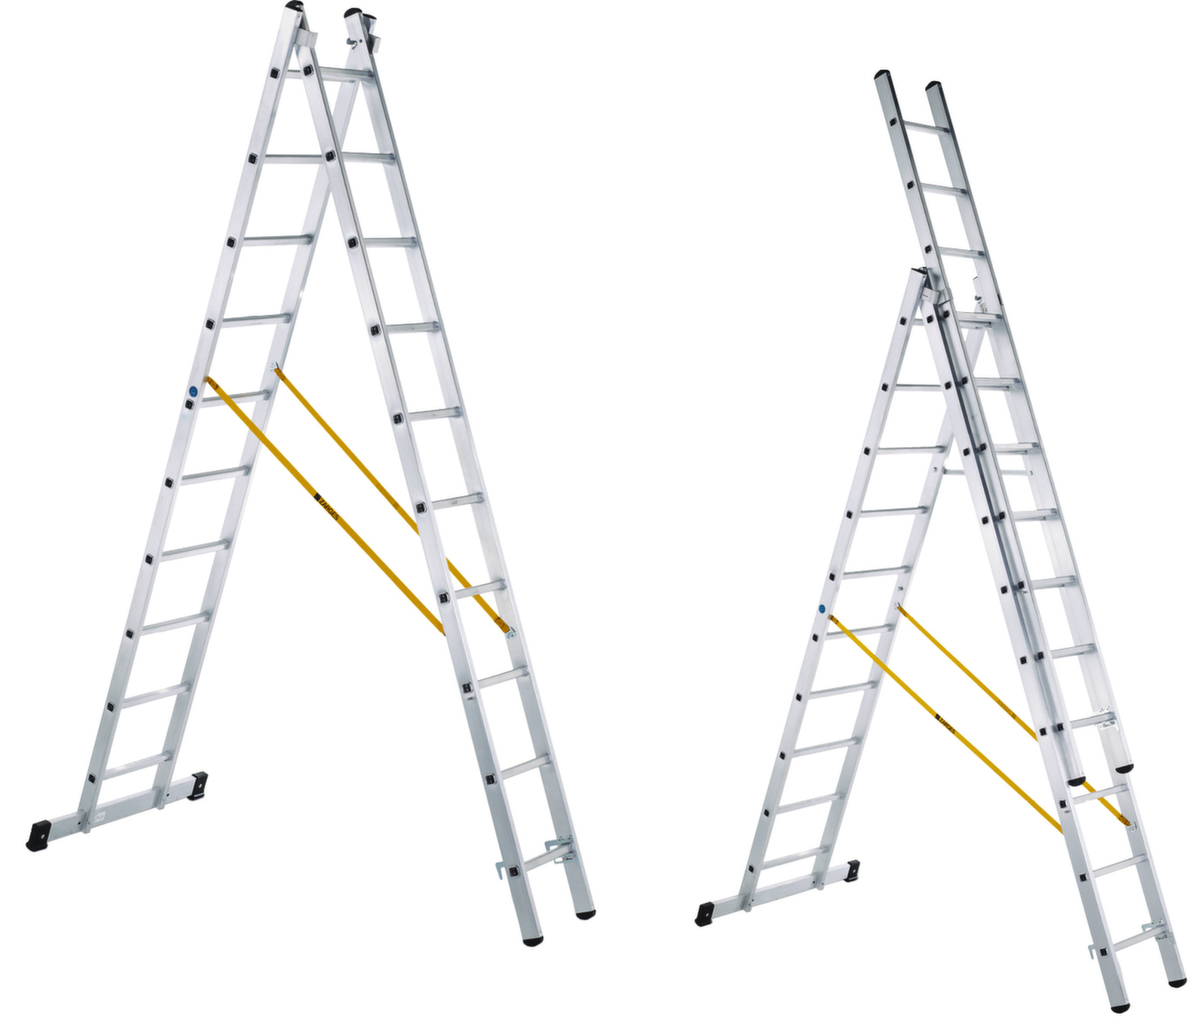 Echelle pliante télescopique: modèle combiné: escabeau, échelle simple,  échelle coulissante et échelle pour escaliers